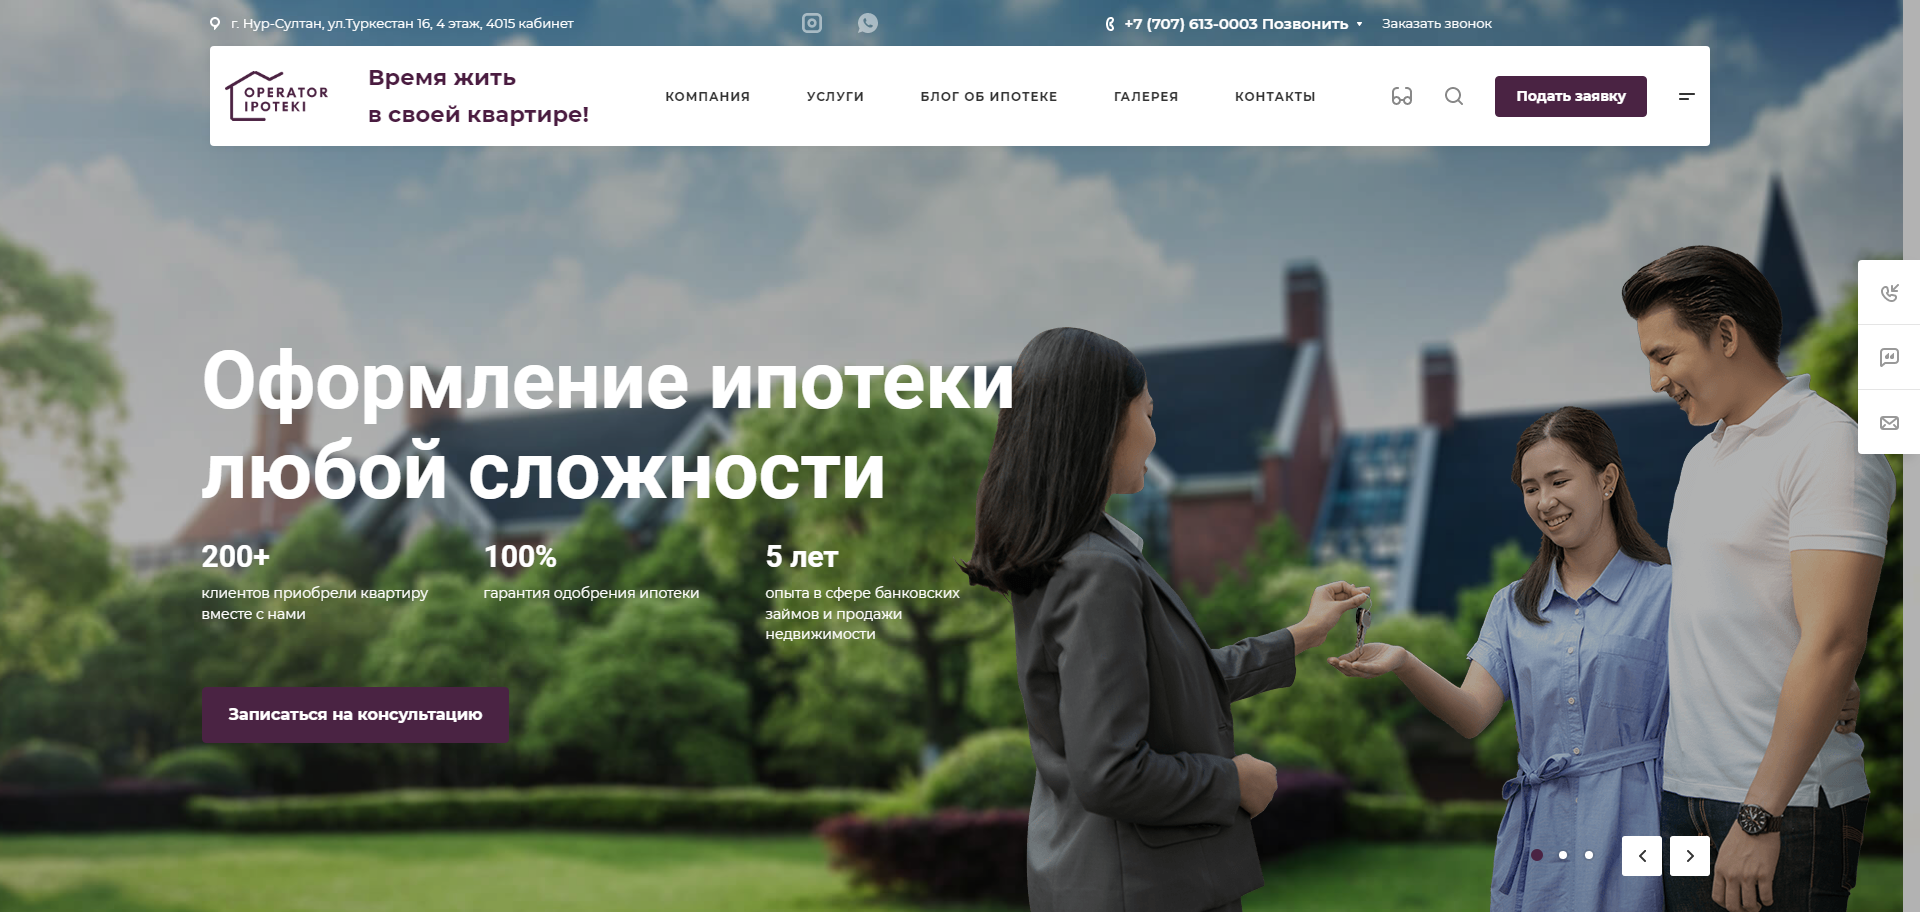 сайт оформления ипотеки в казахстане